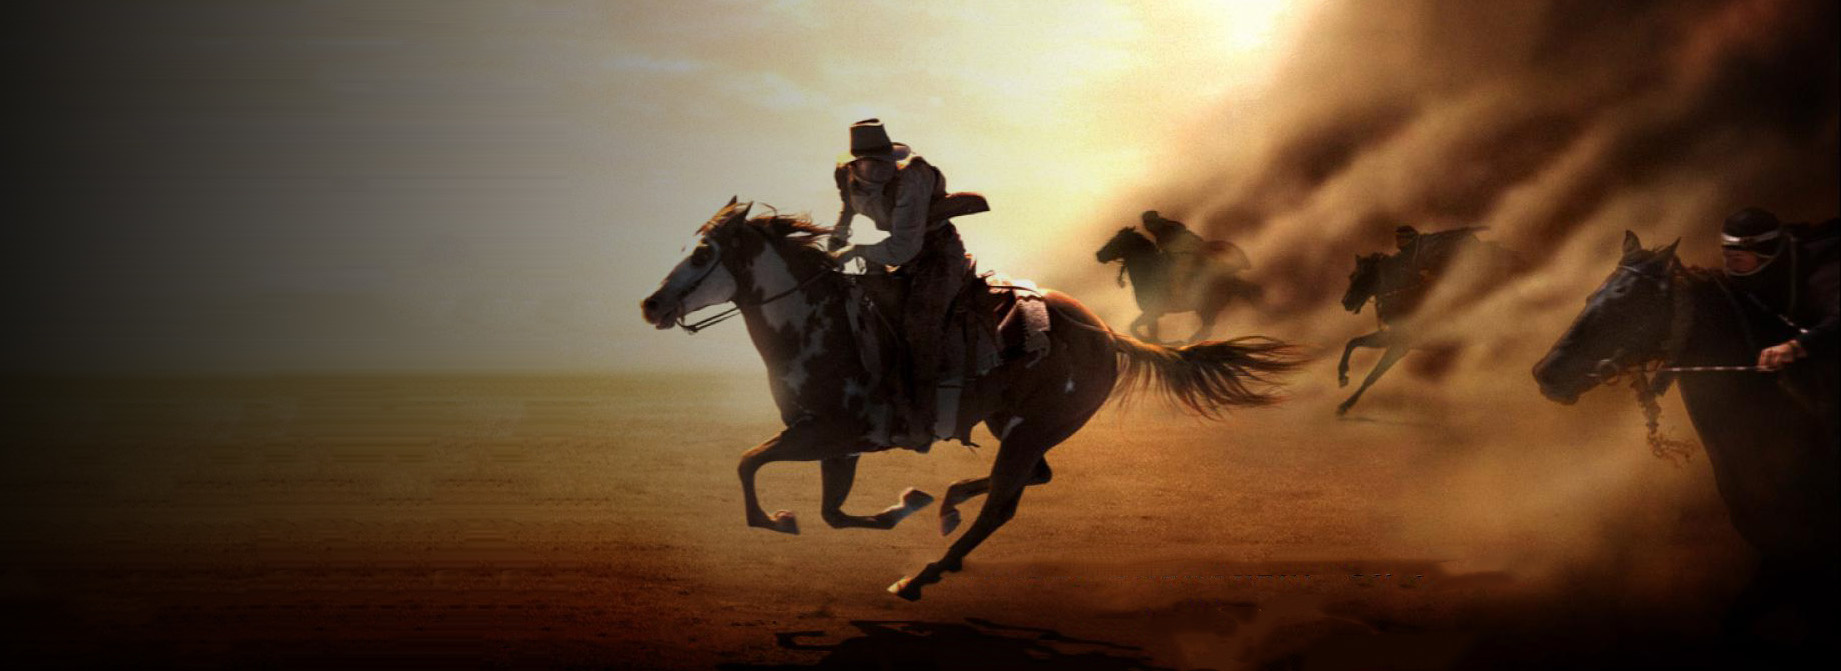 Постер фильма Идальго: Погоня в пустыне